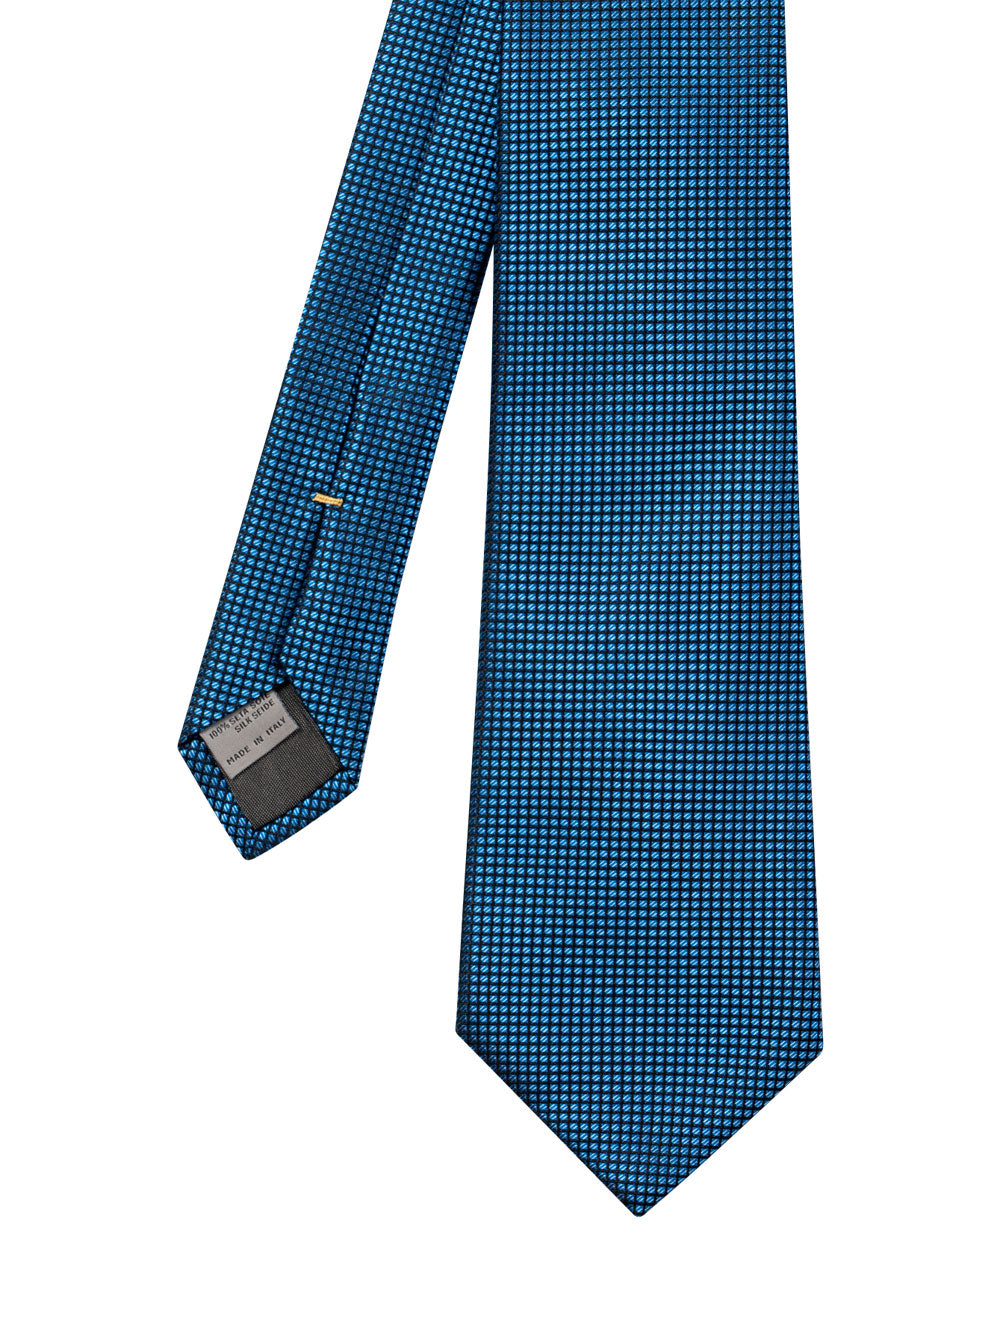 Silk tie with jacquard